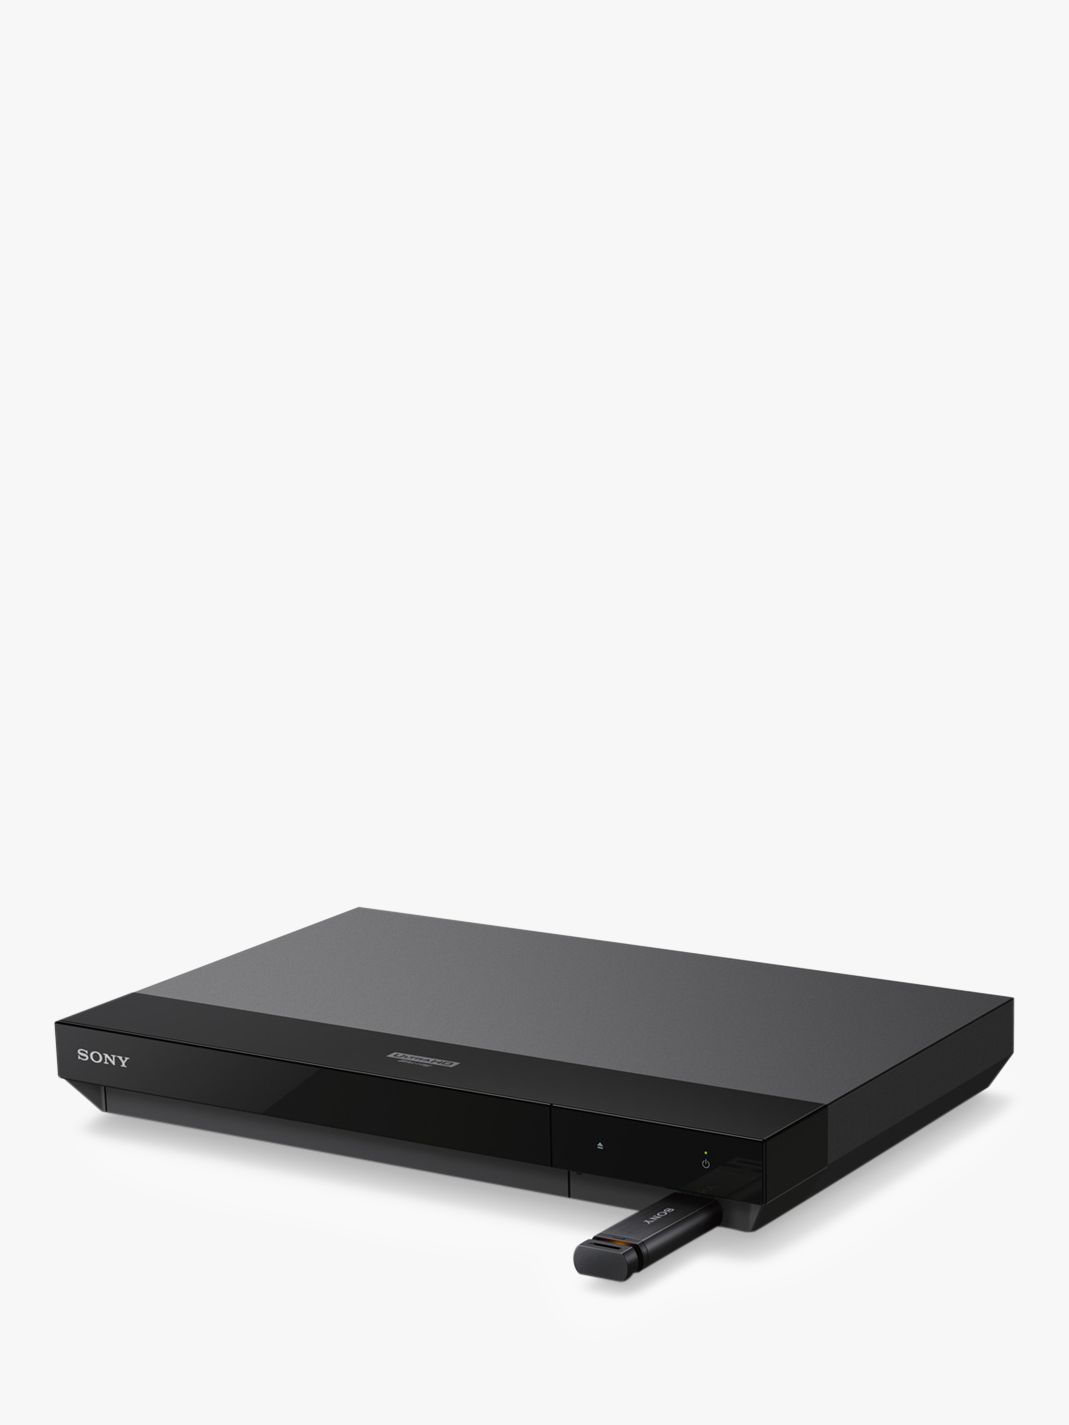 Sony UBP-X700 Smart 3D 4K UHD Blu-Ray/DVD Upscaling Player HDR